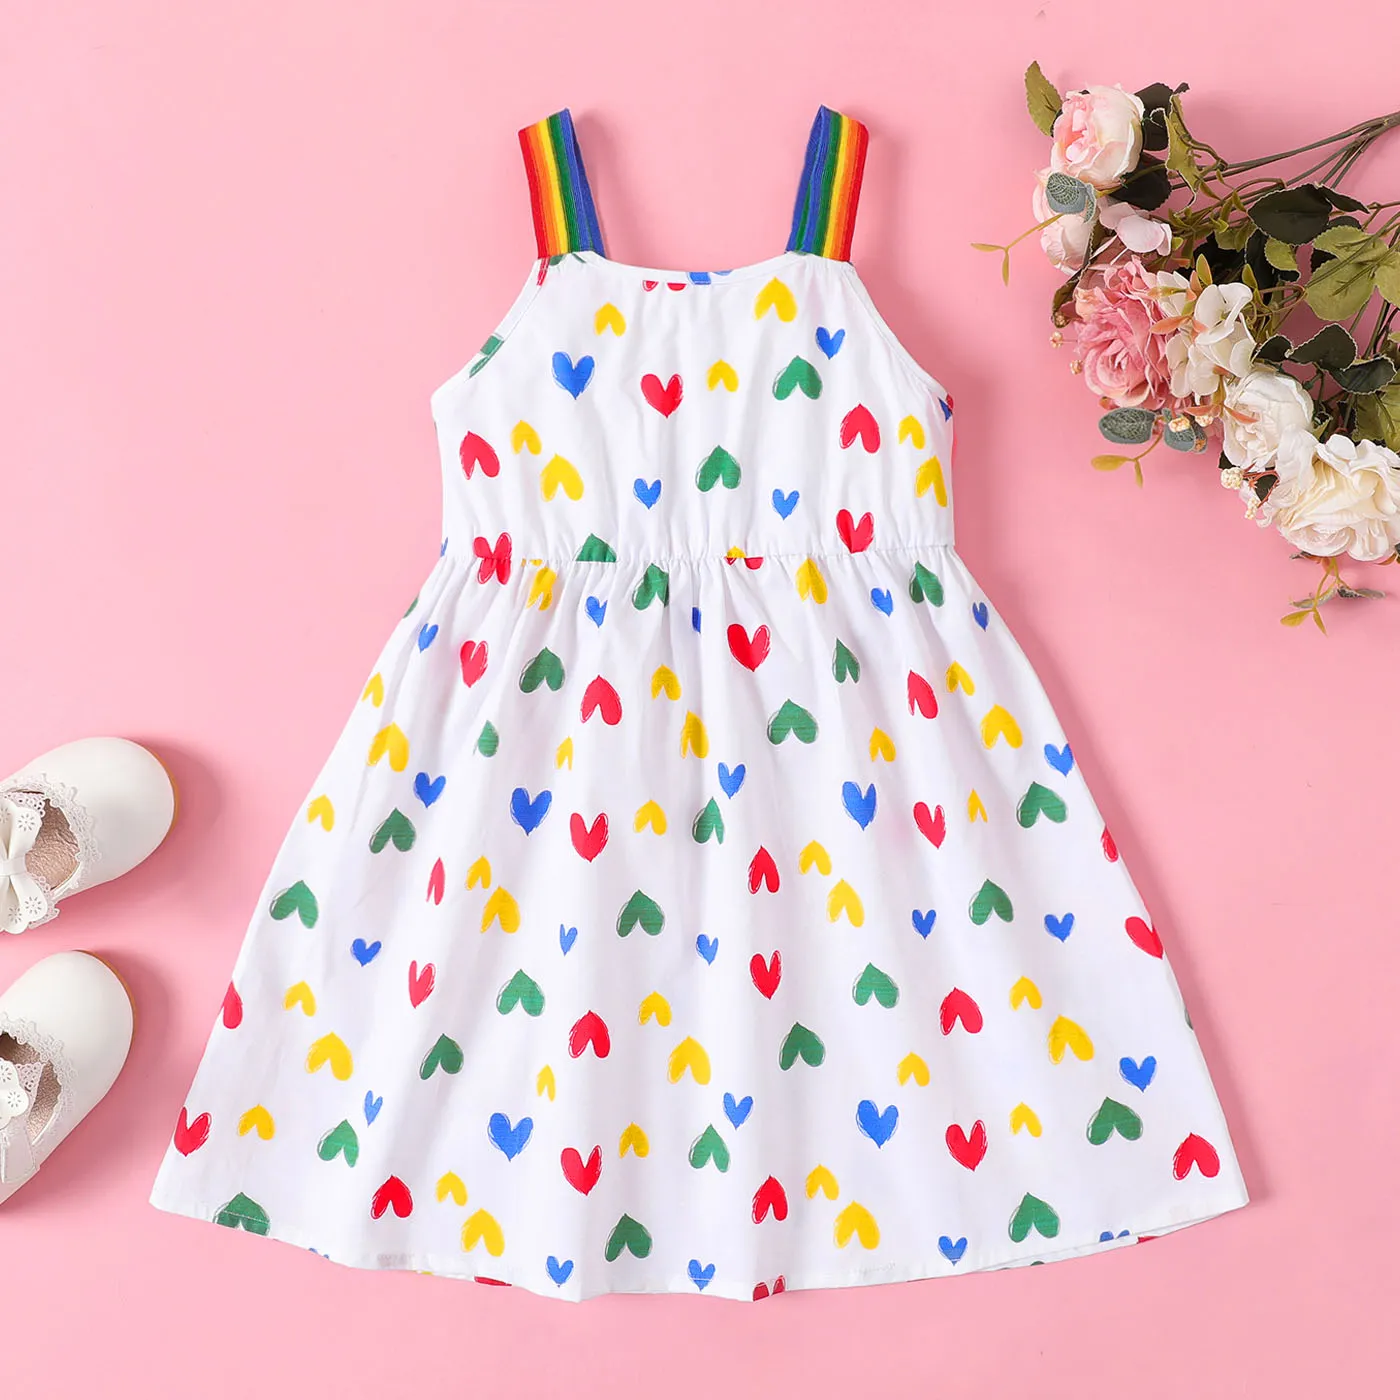 Toddler Girl 100% Cotton Allover Heart Print Rainbow Slip Dress